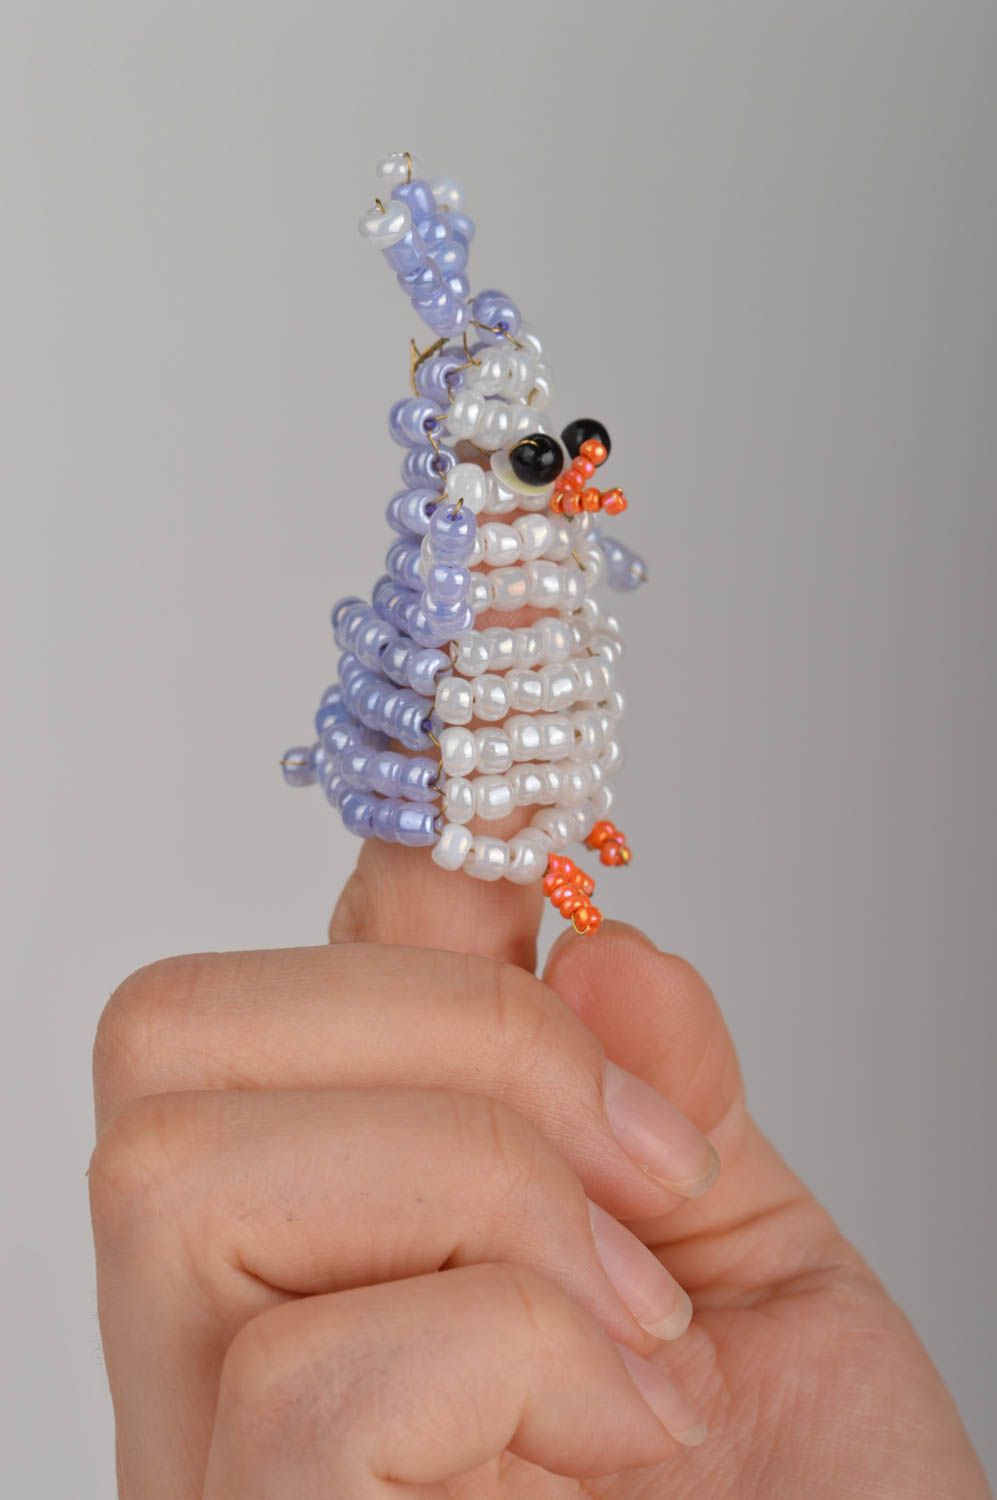 Пальчиковая игрушка пингвин ручной работы из бисера маленькая оригинальная фото 3